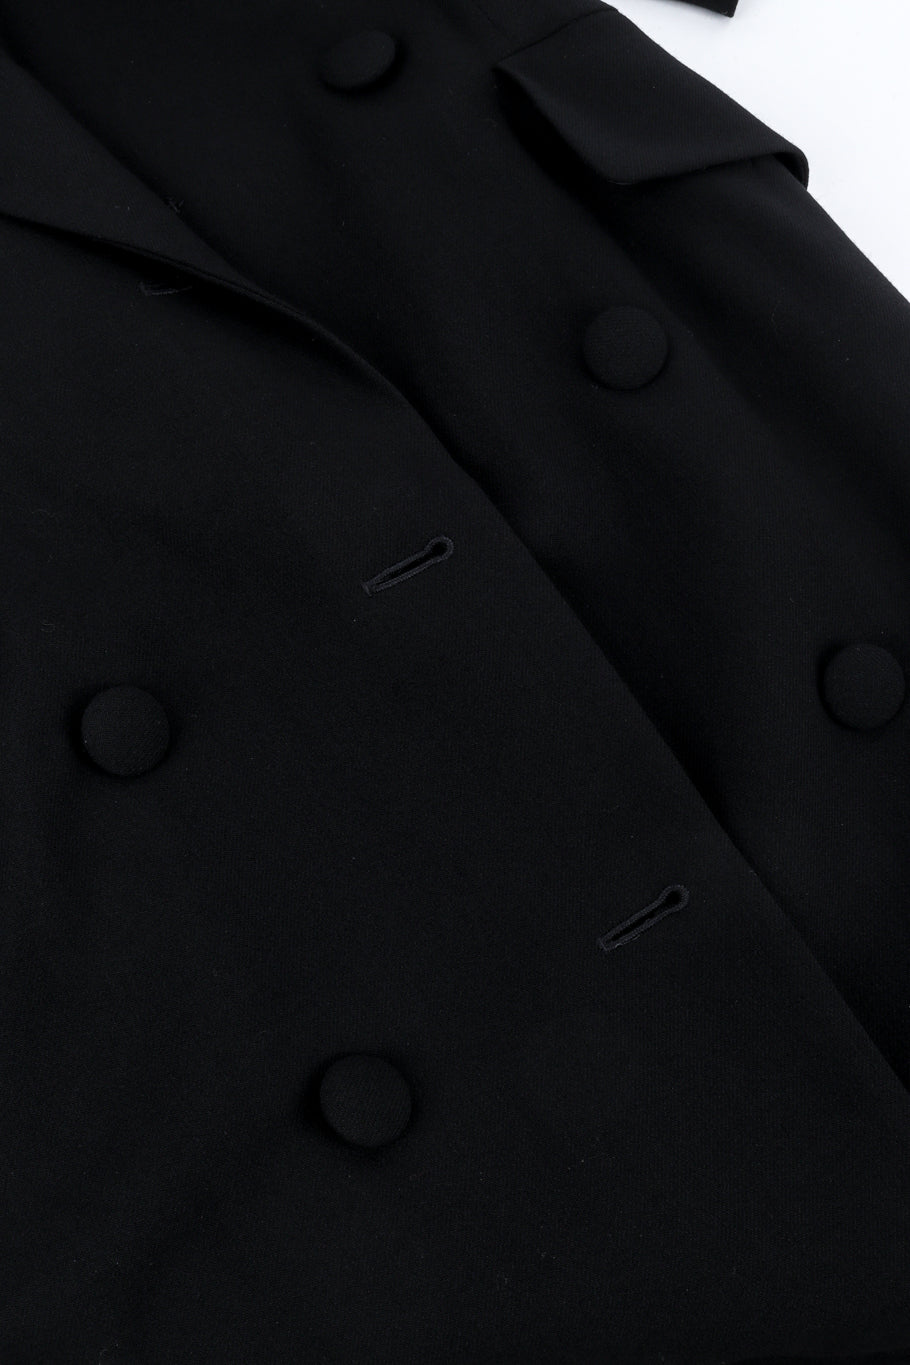 Vintage DKNY Longline Blazer and Pant Suit Set front button closure @recess la